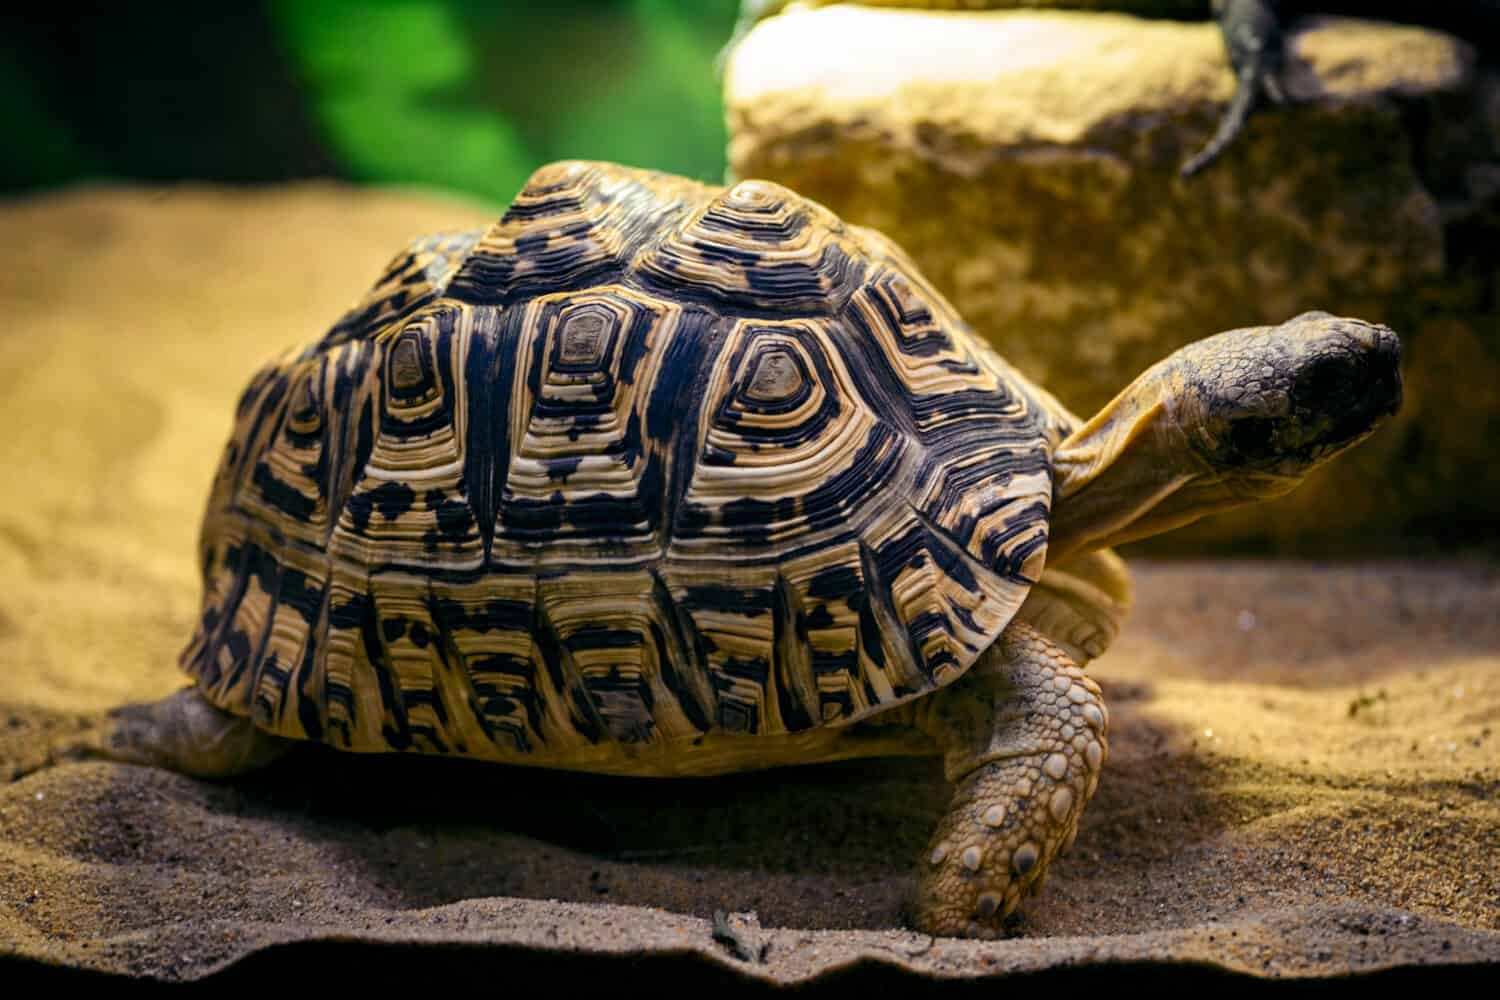 Stigmochelys pardalis - leopard tortoise in a terrarium.